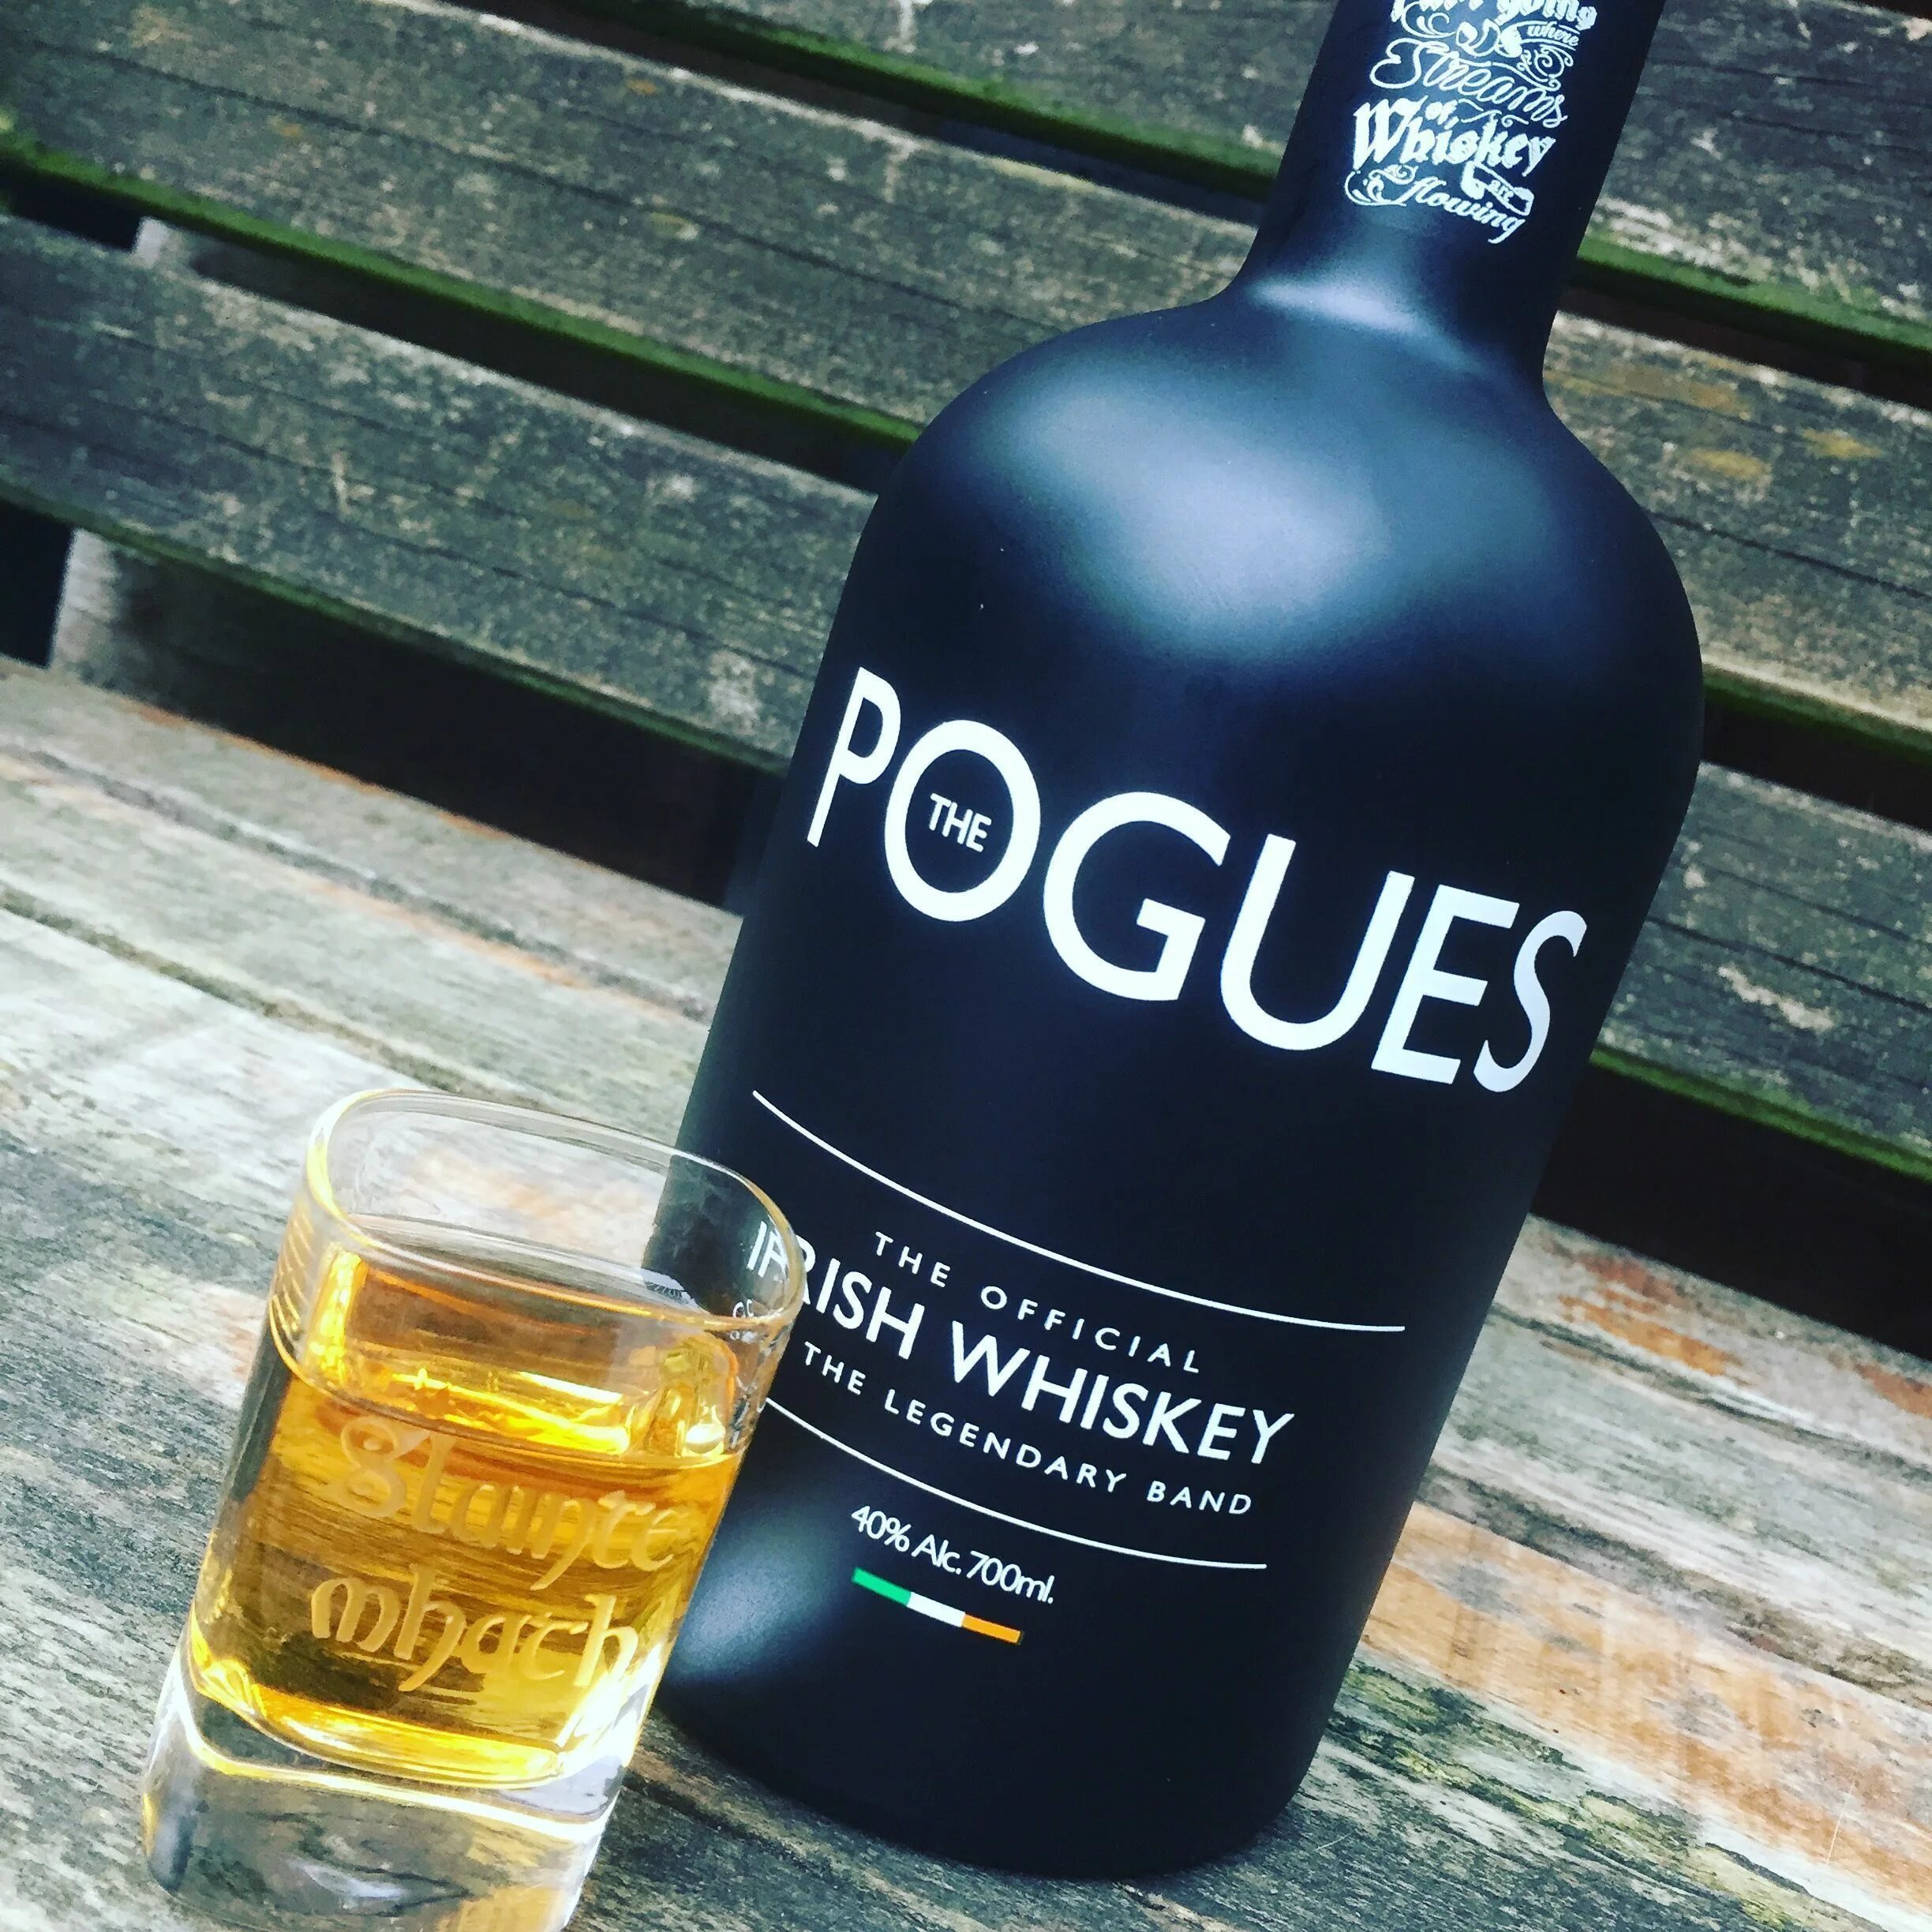 Pogues irish. Pogues Single Malt виски. Ирландский виски Pogues. Виски Pogues Irish Whiskey. Ирландский виски Погус.